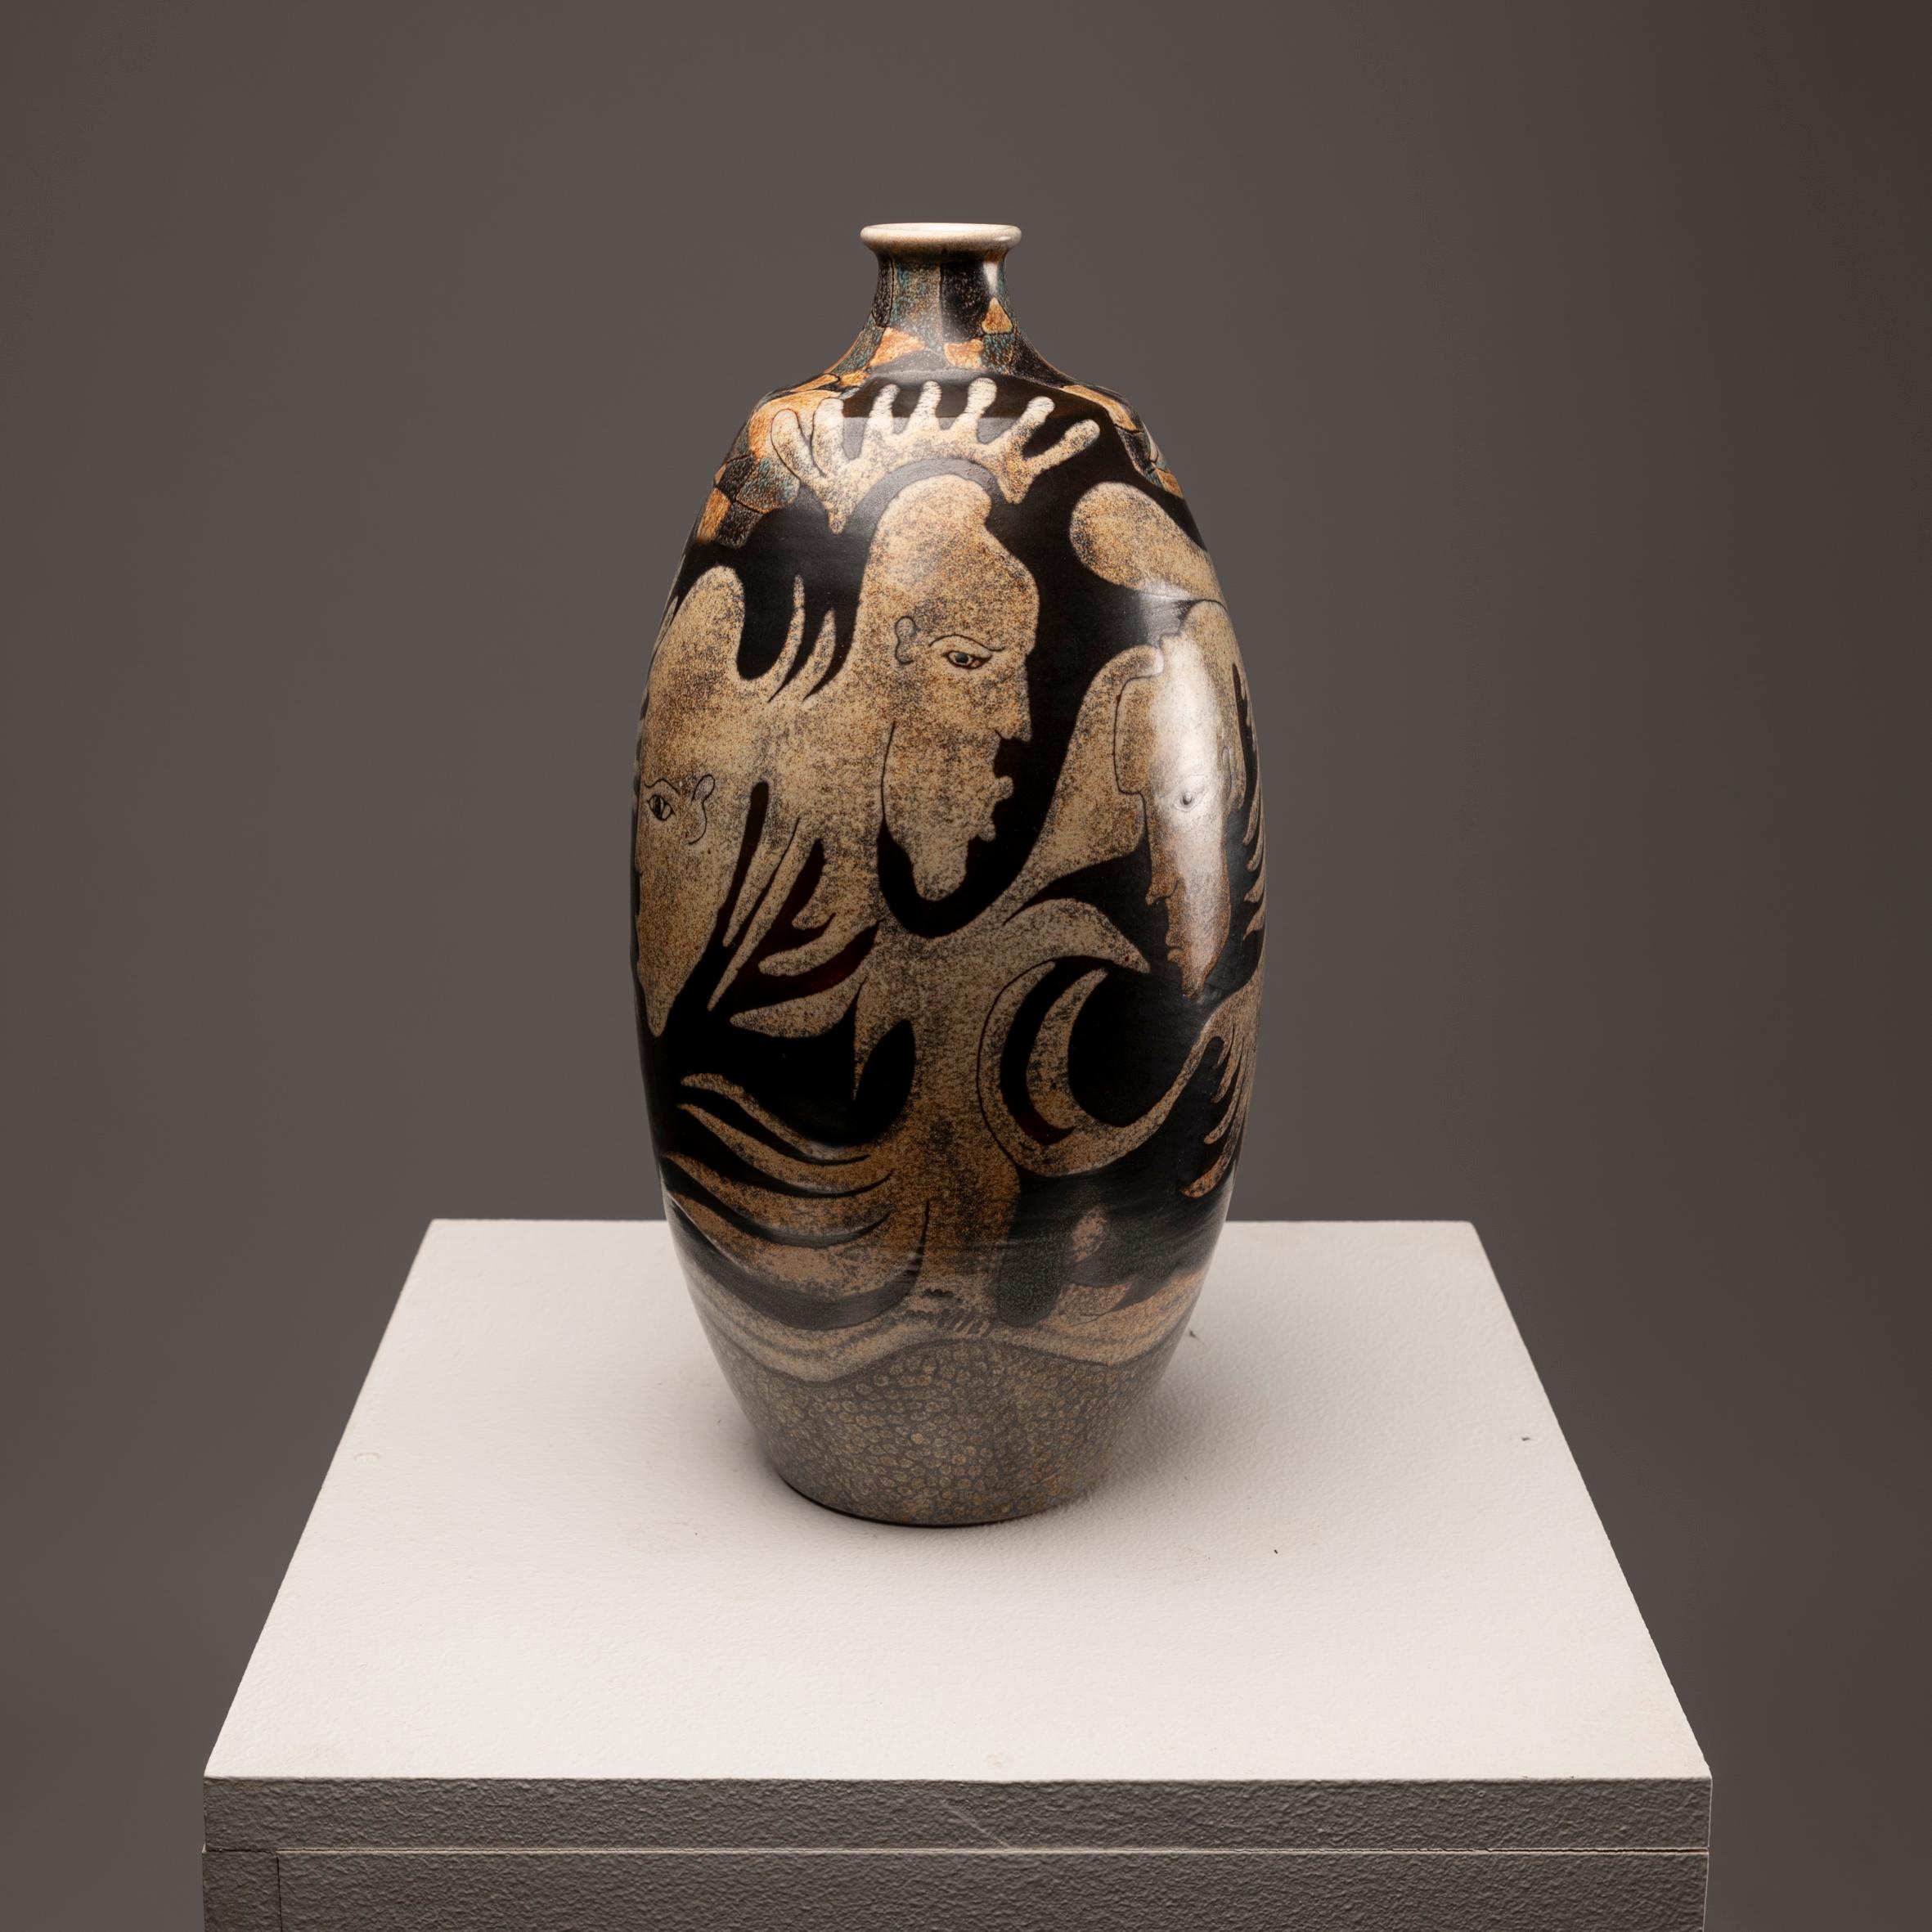 Die Investition in diese emaillierte Keramikvase, signiert von M. Millet, aus den 1980er Jahren, ist eine überzeugende Gelegenheit, ein einzigartiges Kunstwerk zu besitzen. Diese mit viel Geschick und Kreativität gefertigte Vase zeigt das Talent und